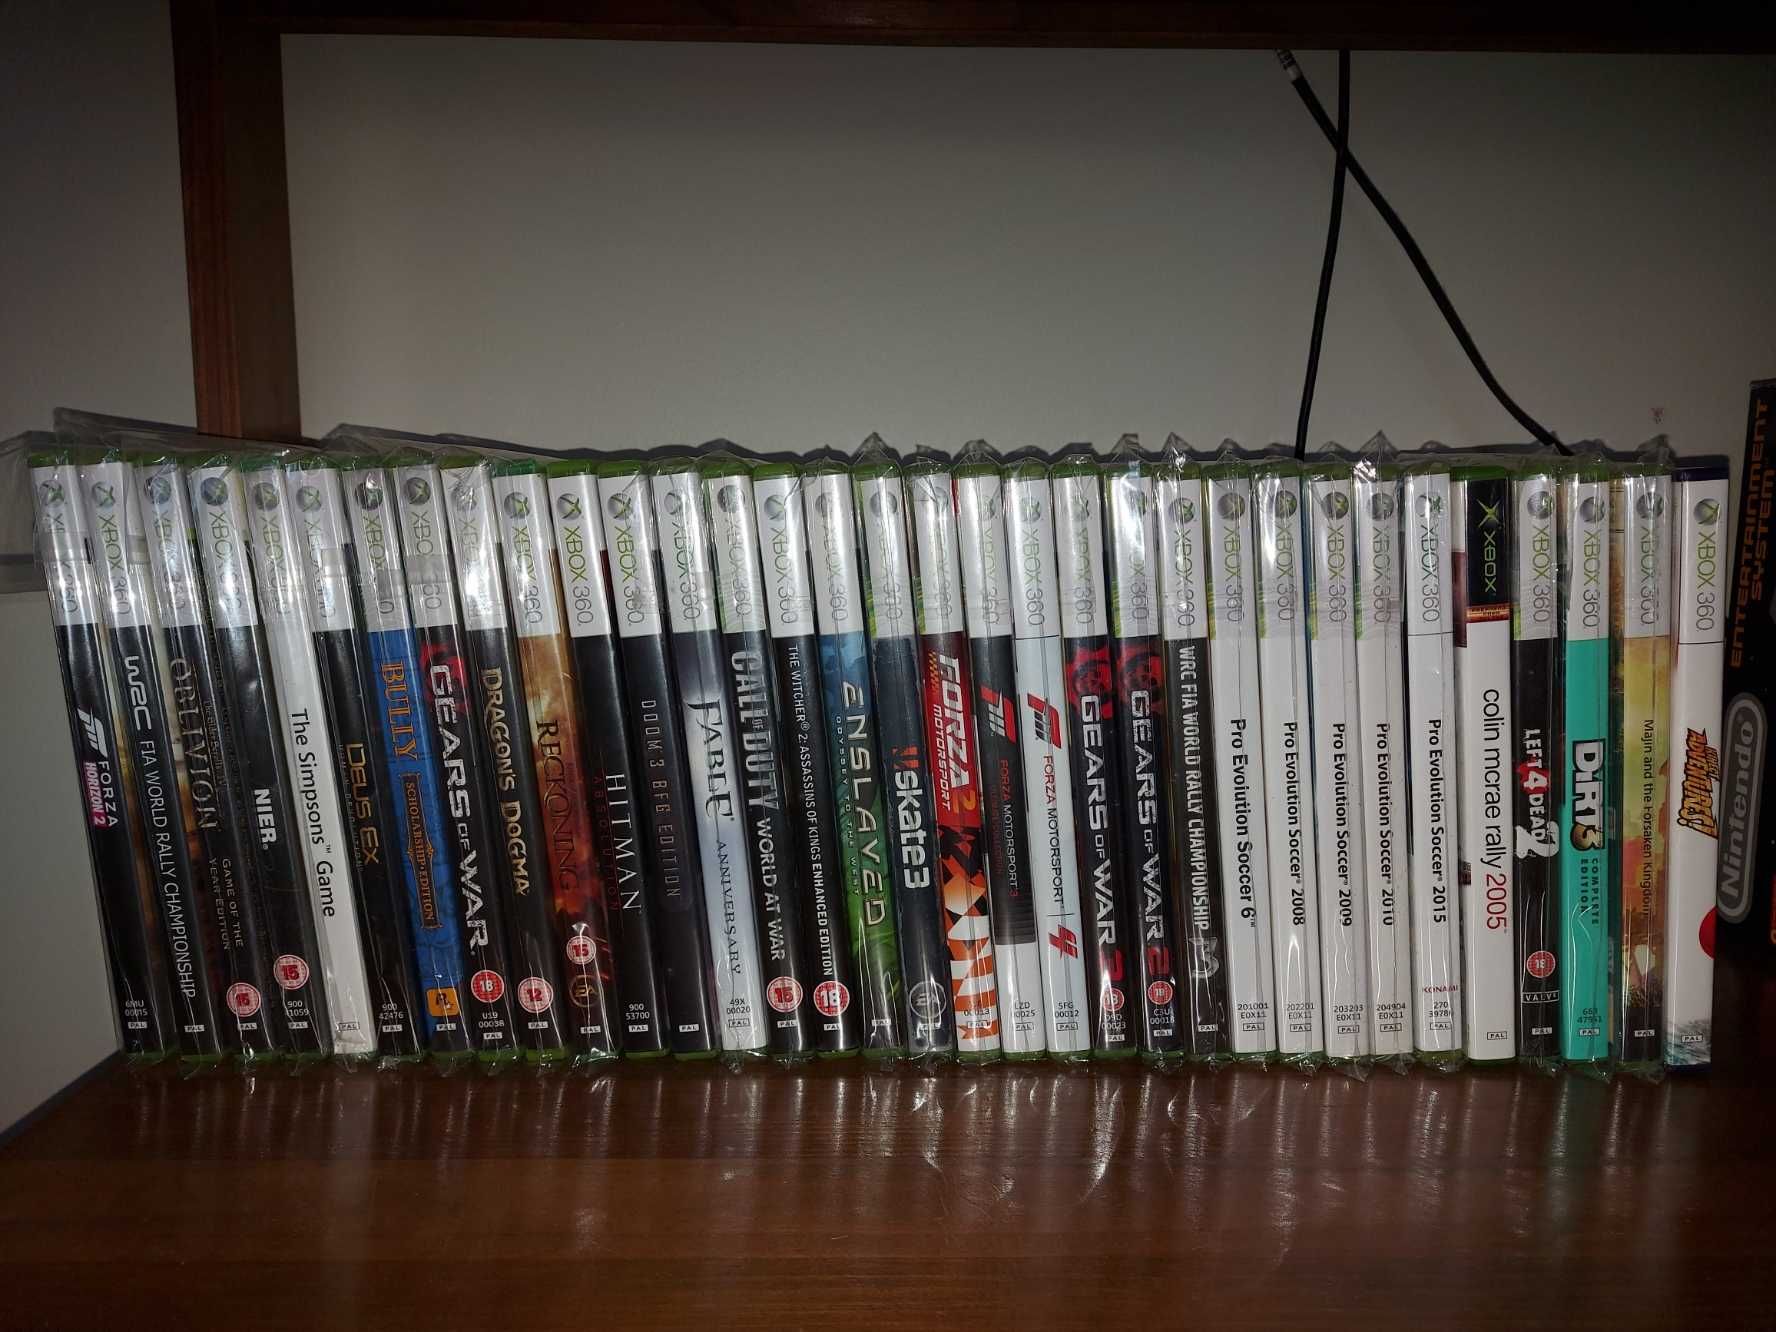 117 Jogos Xbox 360 em bom estado